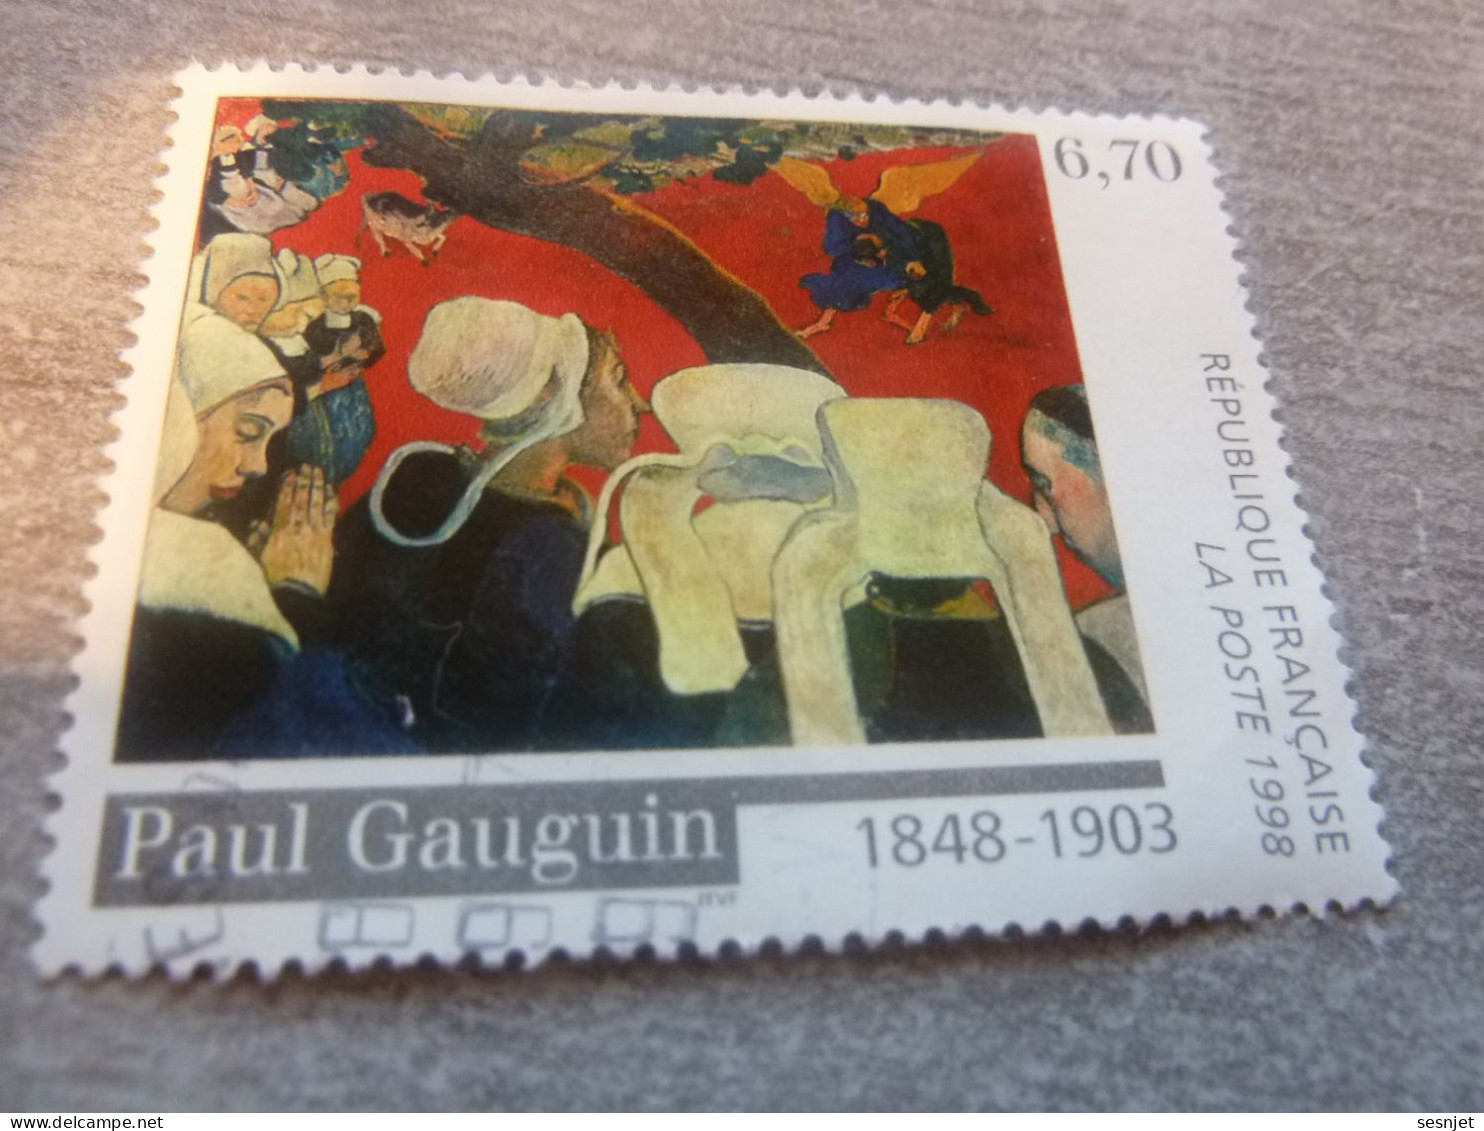 Paul Gauguin (1848-1903) Vision Après Le Sermon - 6f.70 - Yt 3207 - Multicolore - Oblitéré - Année 1998 - - Gebruikt